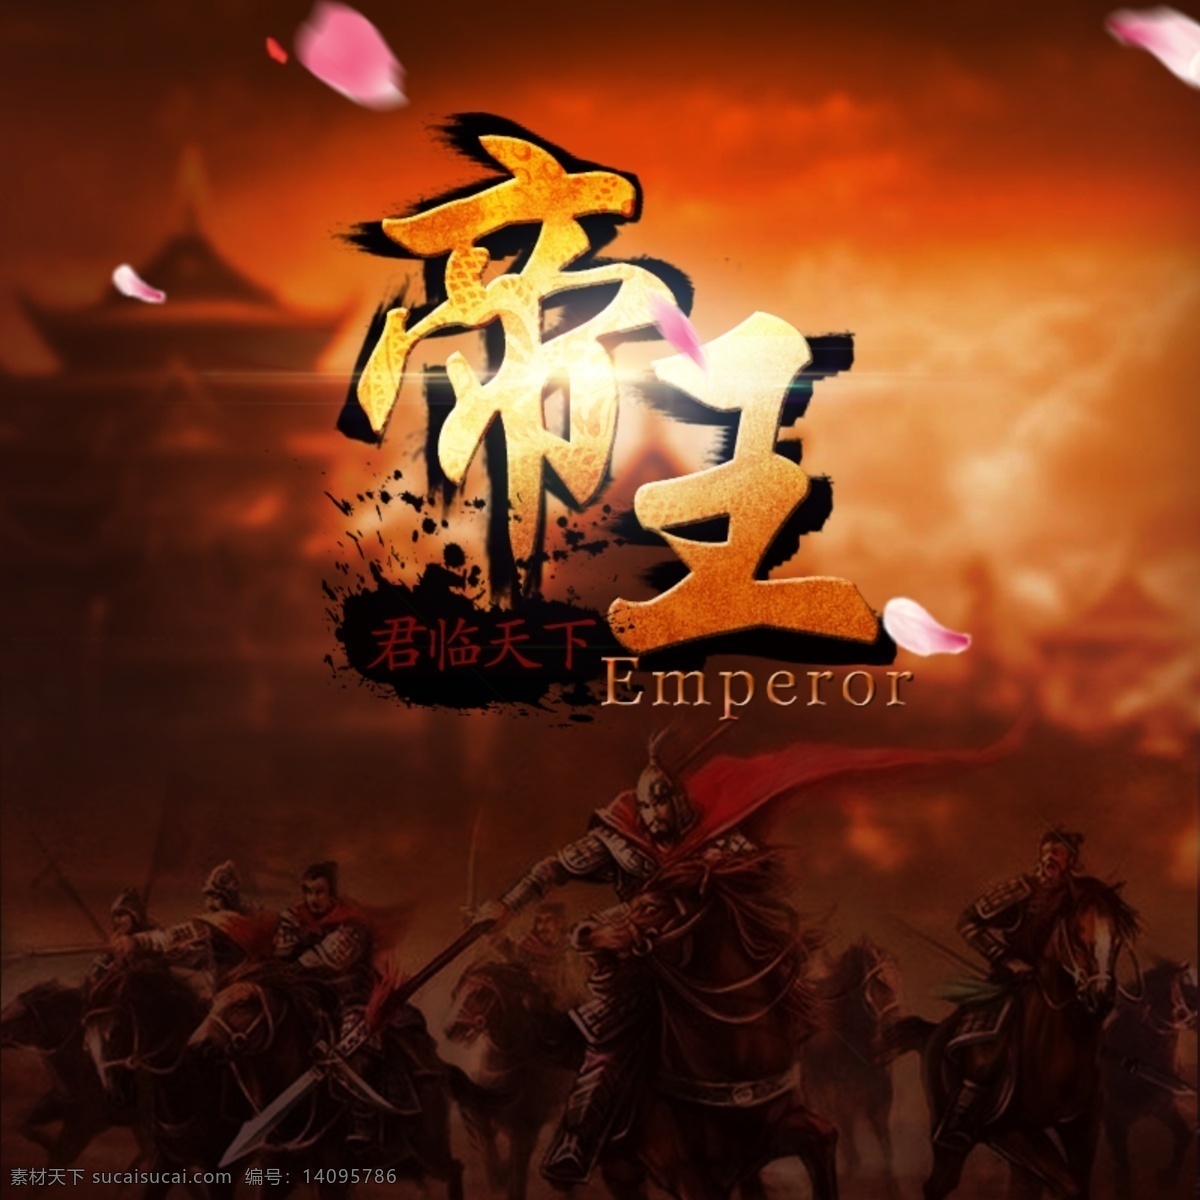 游戏背景 游戏 游戏图片 游戏设计图 帝王 古代征战 分层